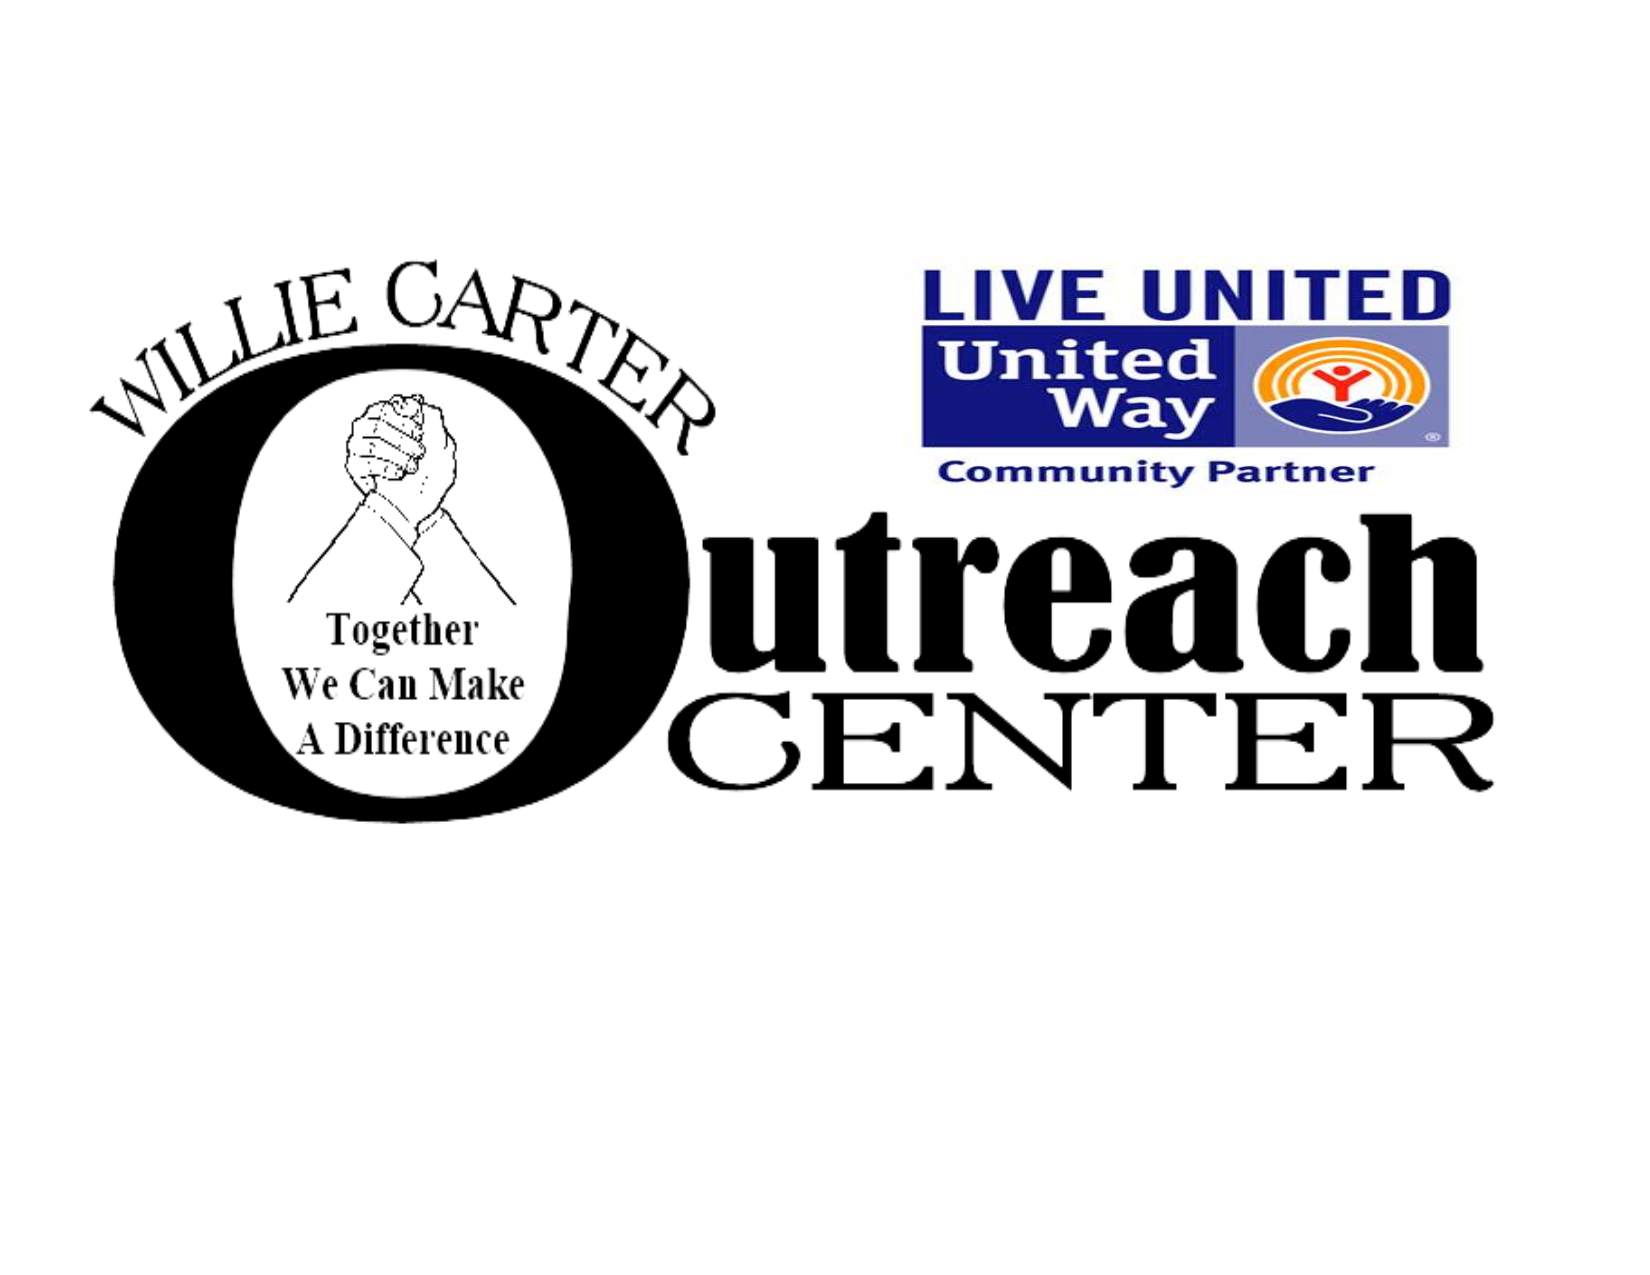 Willie Carter Community Outreach Center